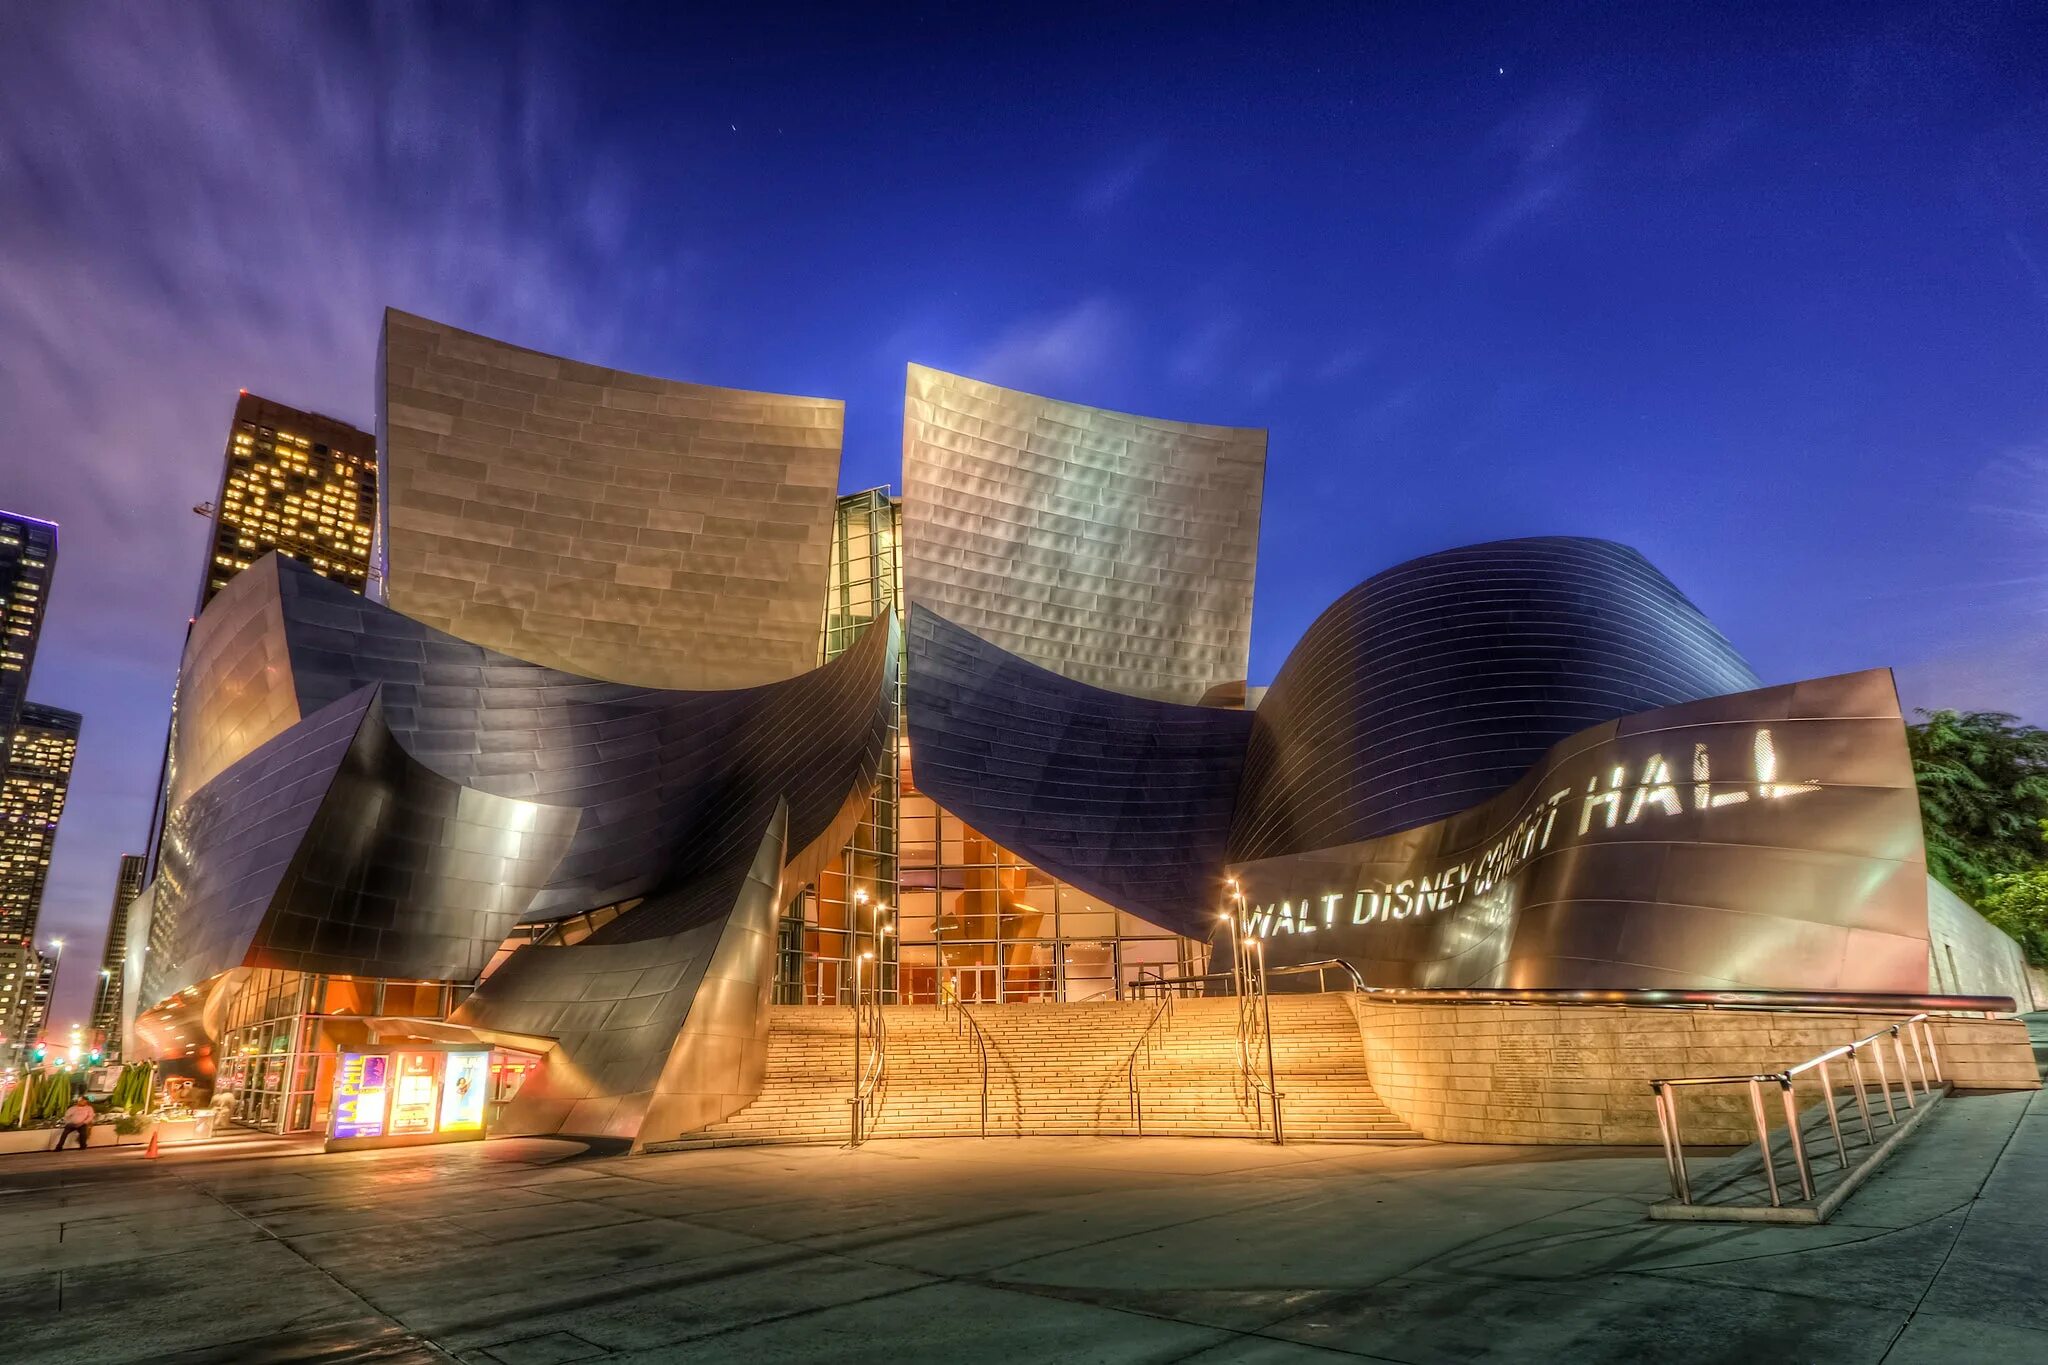 Концертный зал диснея. Лос Анджелес концертный зал Уолта Диснея. Концертный зал Уолта Диснея Фрэнка Гери, Лос-Анджелес, Калифорния. Концертный зал имени Уолта Диснея в Лос-Анджелесе (2003). Концертный зал имени Уолта Диснея Фрэнк Гери.